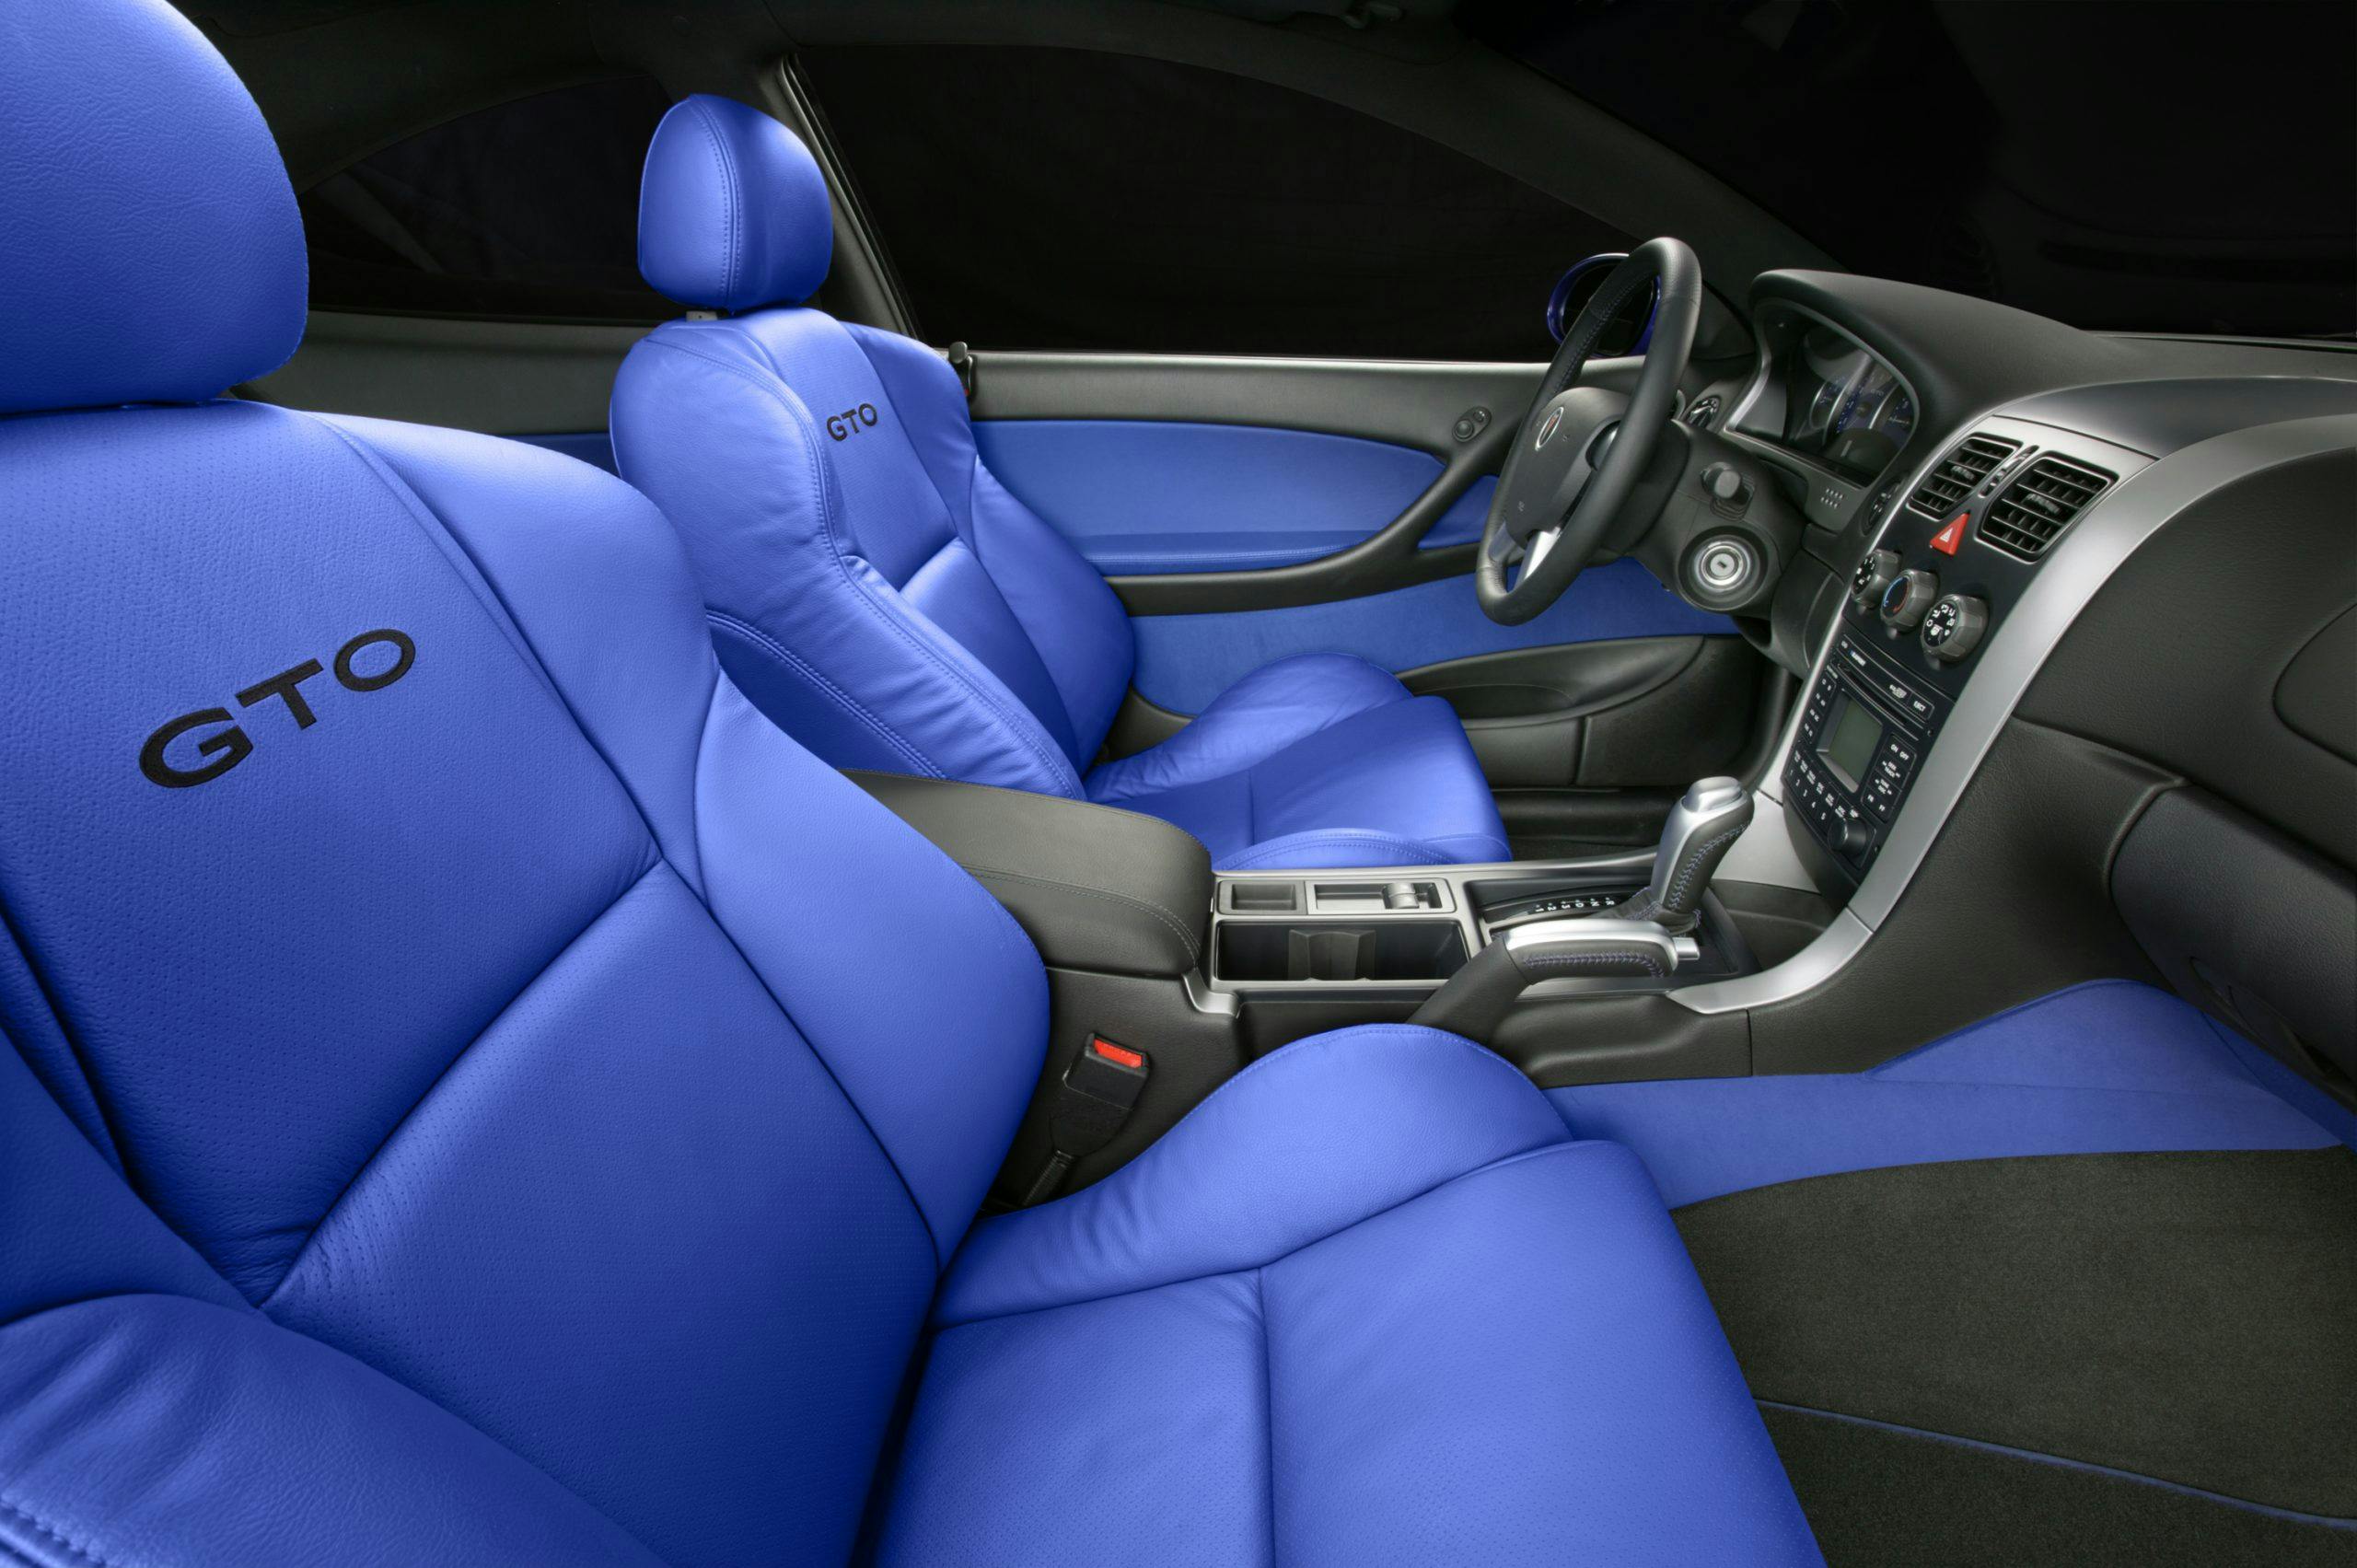 2004 Pontiac GTO interior side